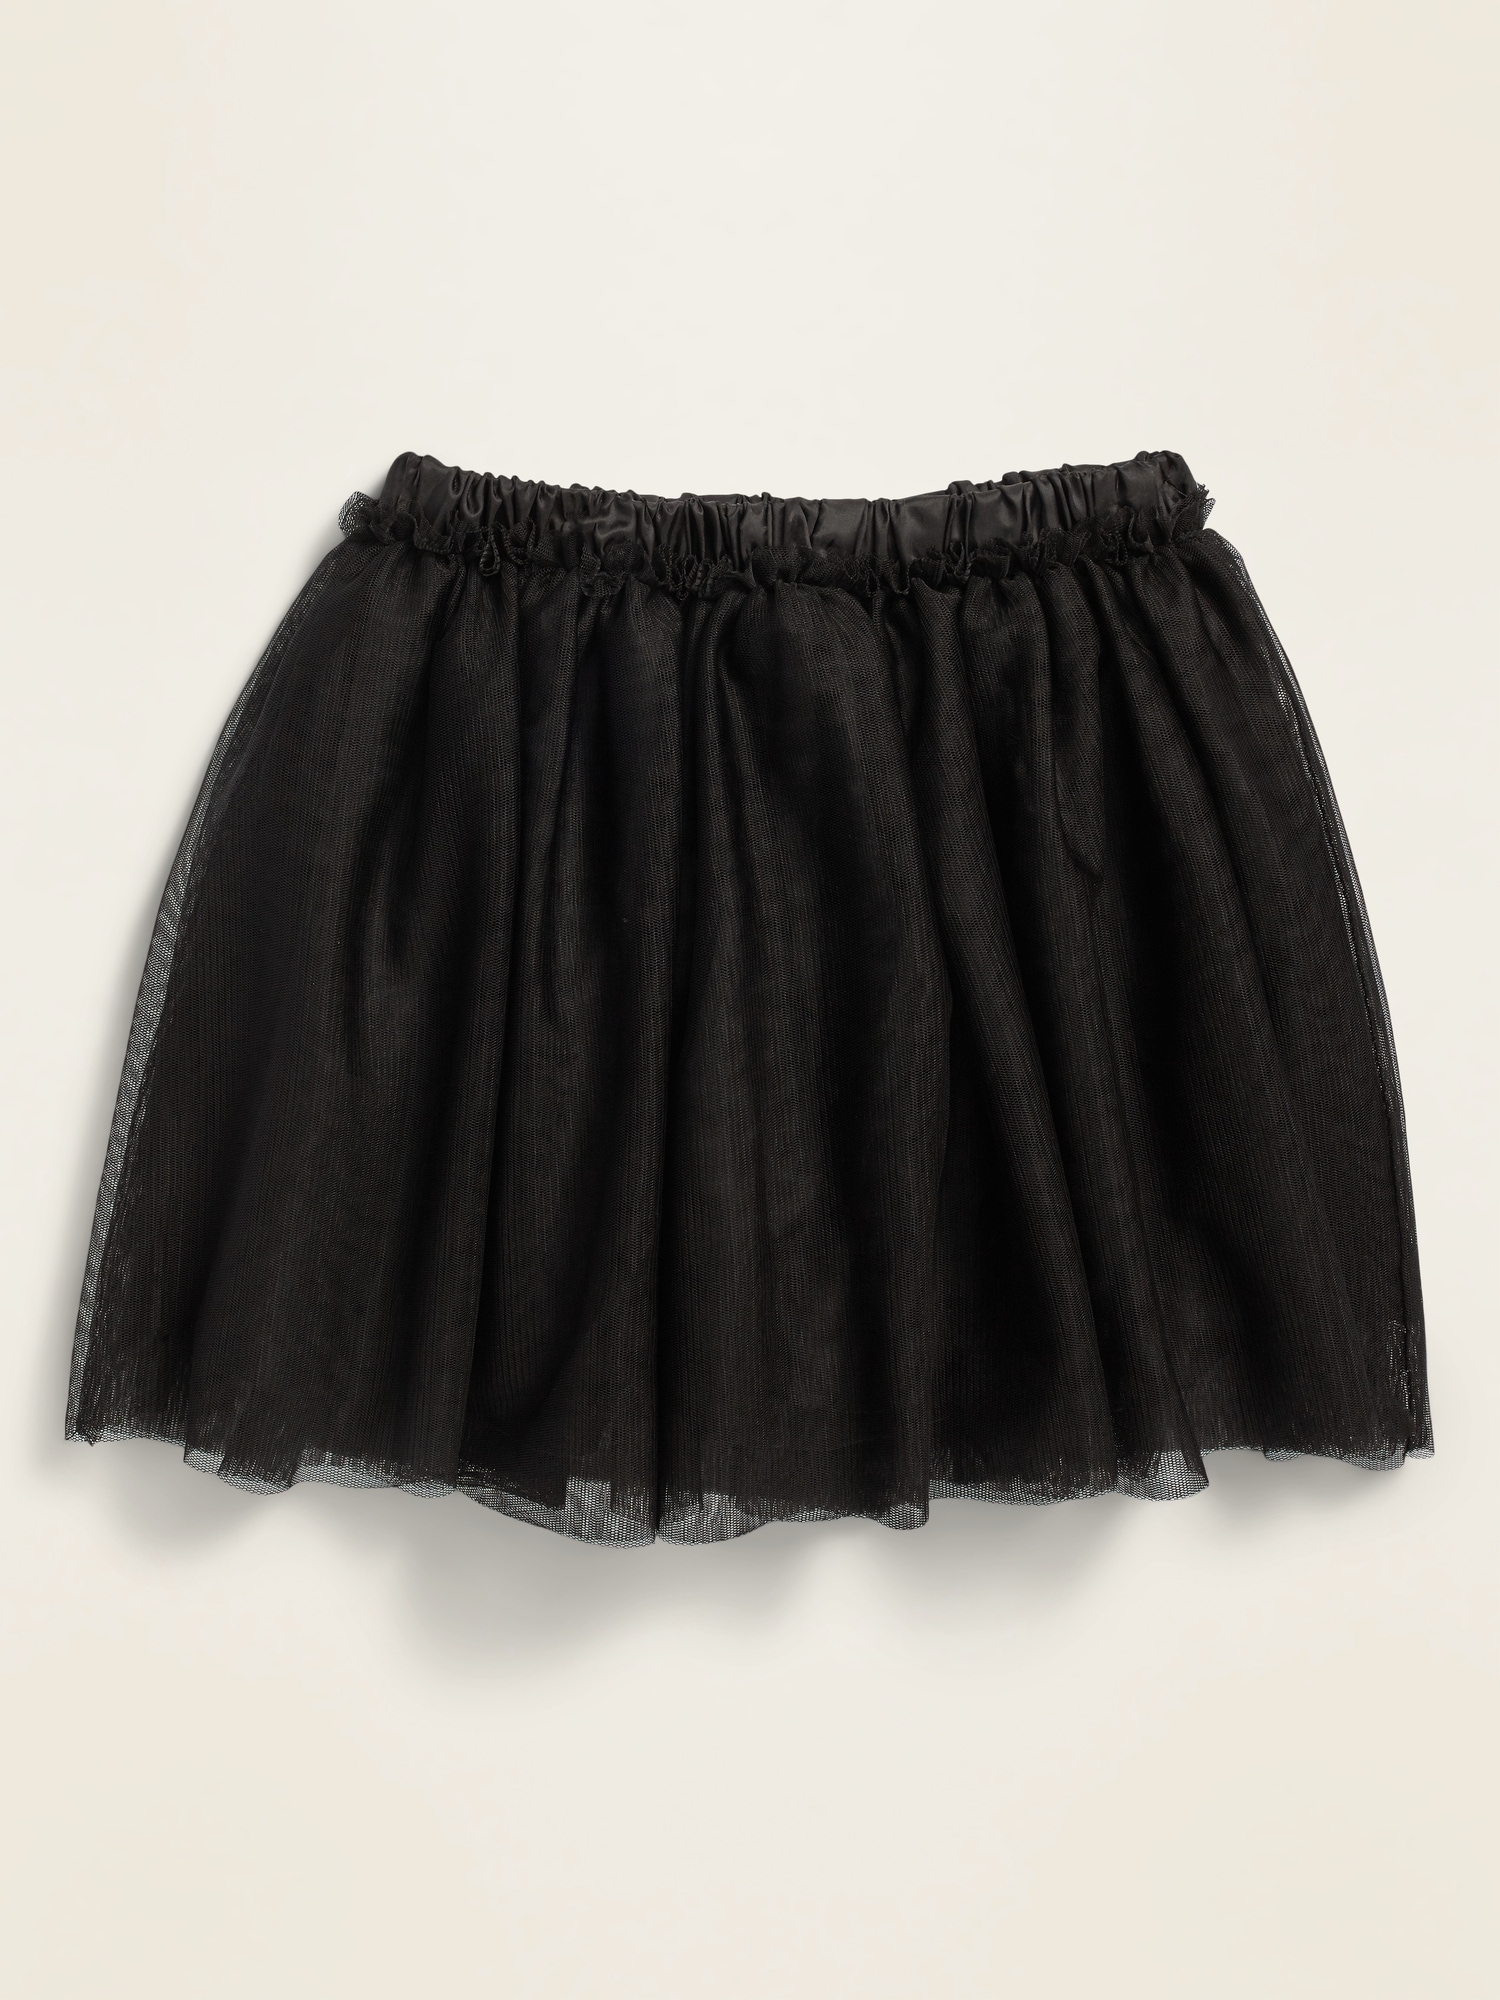 Tulle Tutu Skirt for Toddler Girls